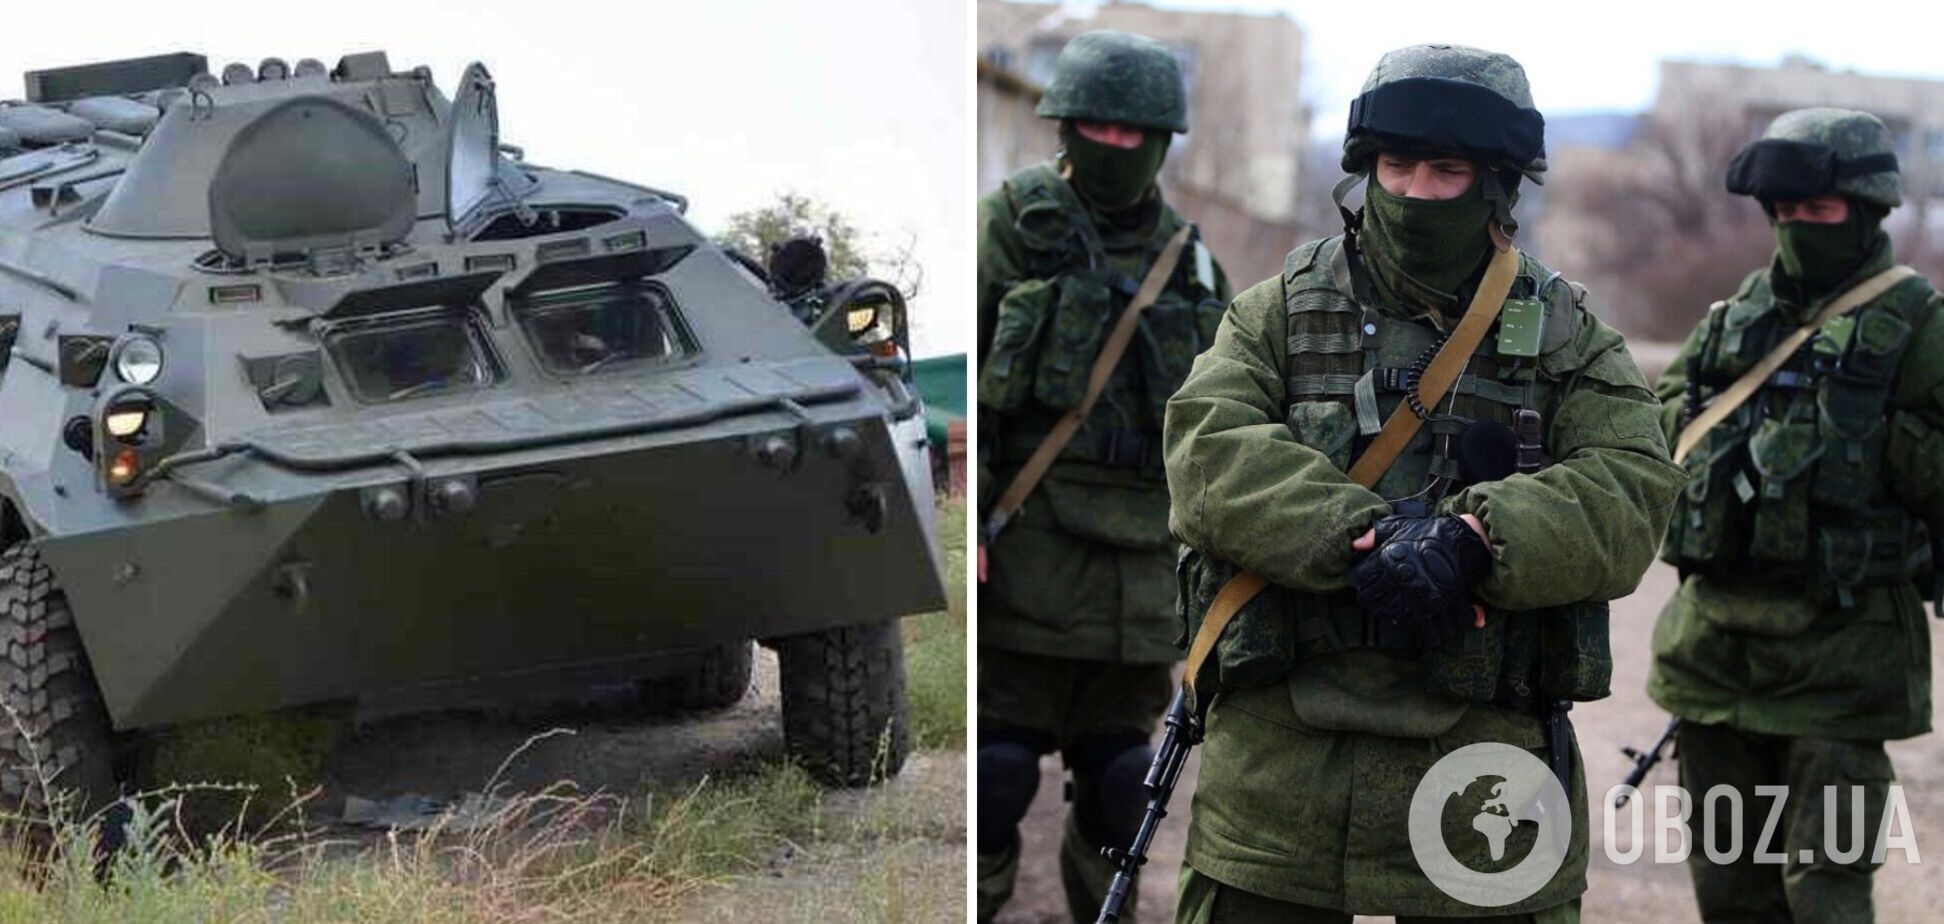 Українці викрали БТР у російських окупантів: у мережі з'явилося відео